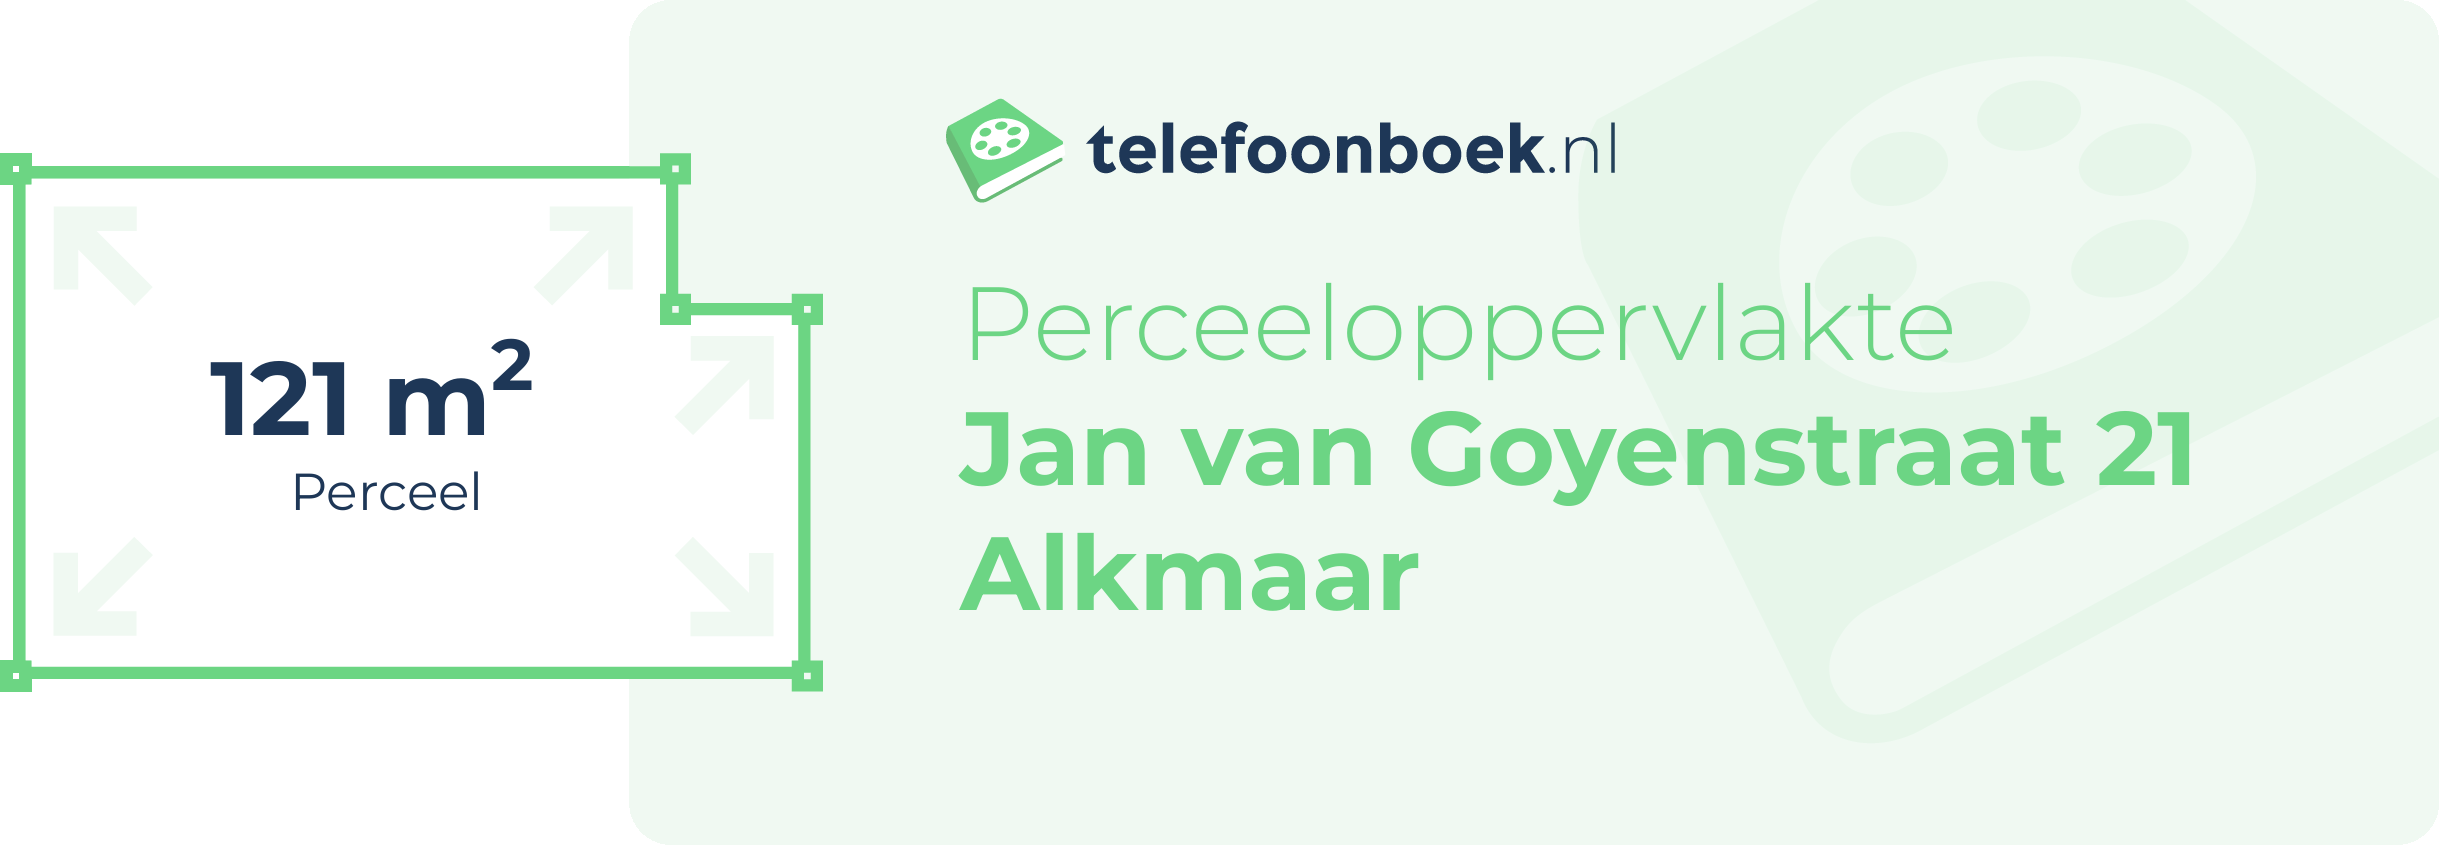 Perceeloppervlakte Jan Van Goyenstraat 21 Alkmaar